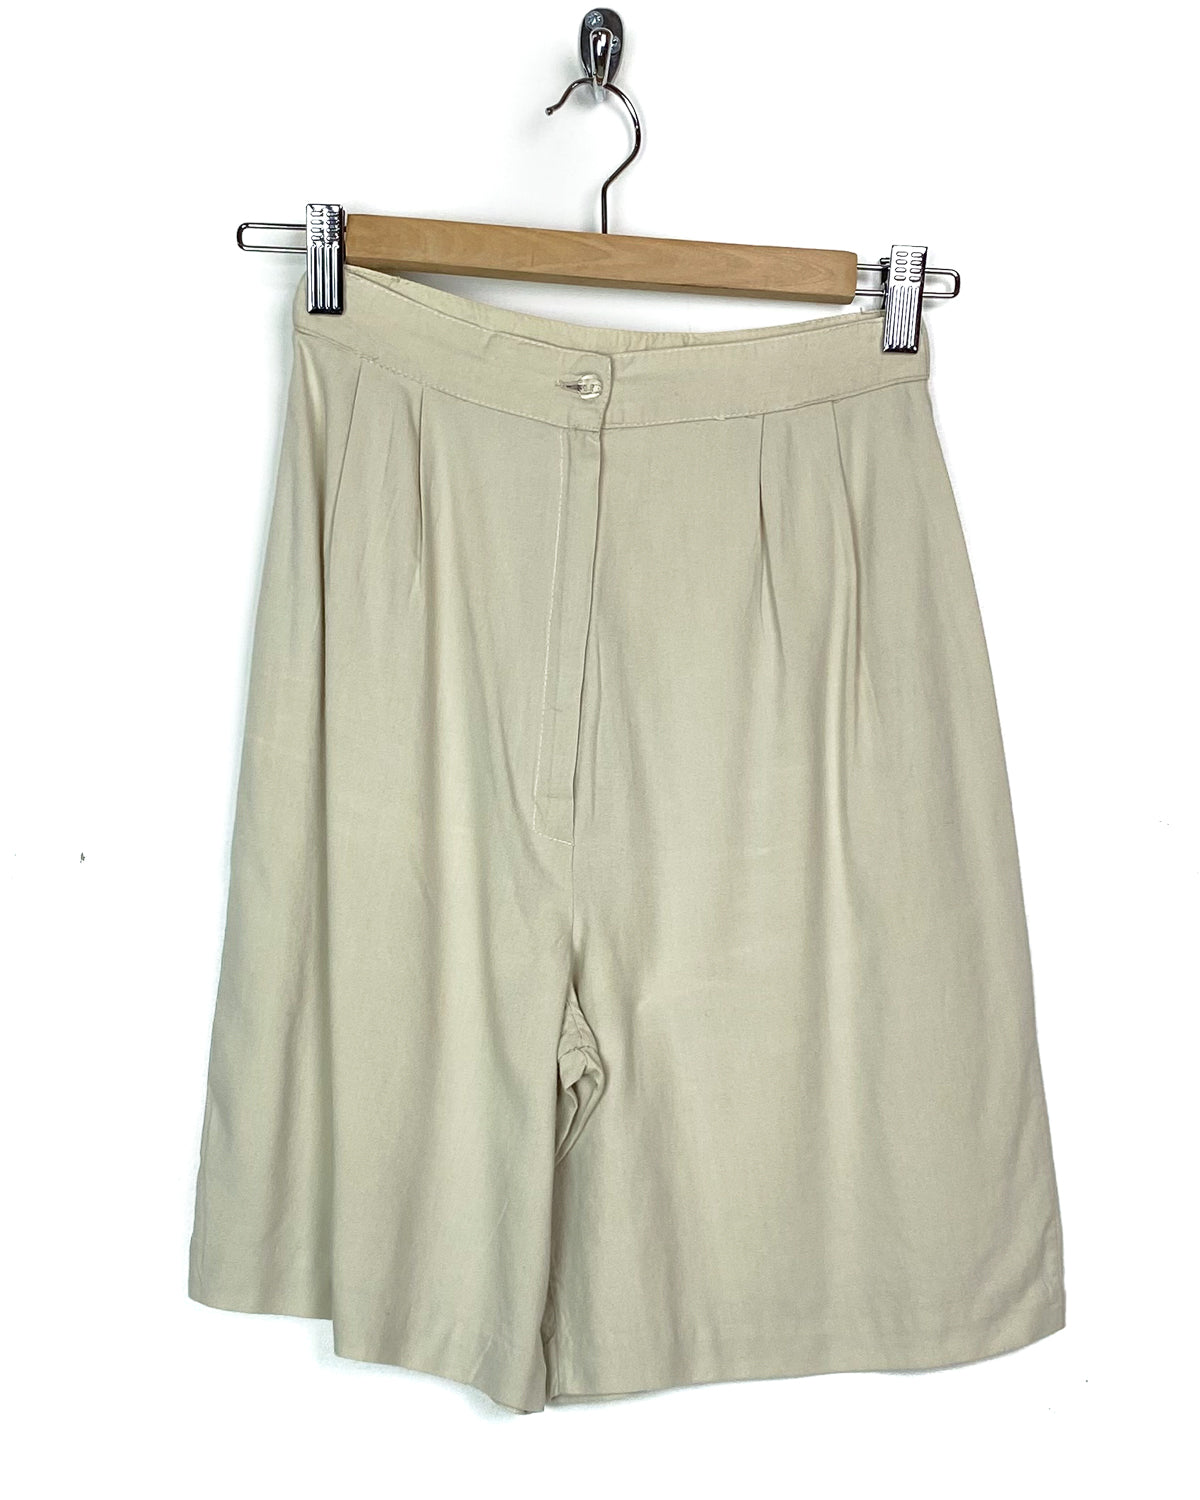 Shorts Vintage In Misto Cotone Taglia S